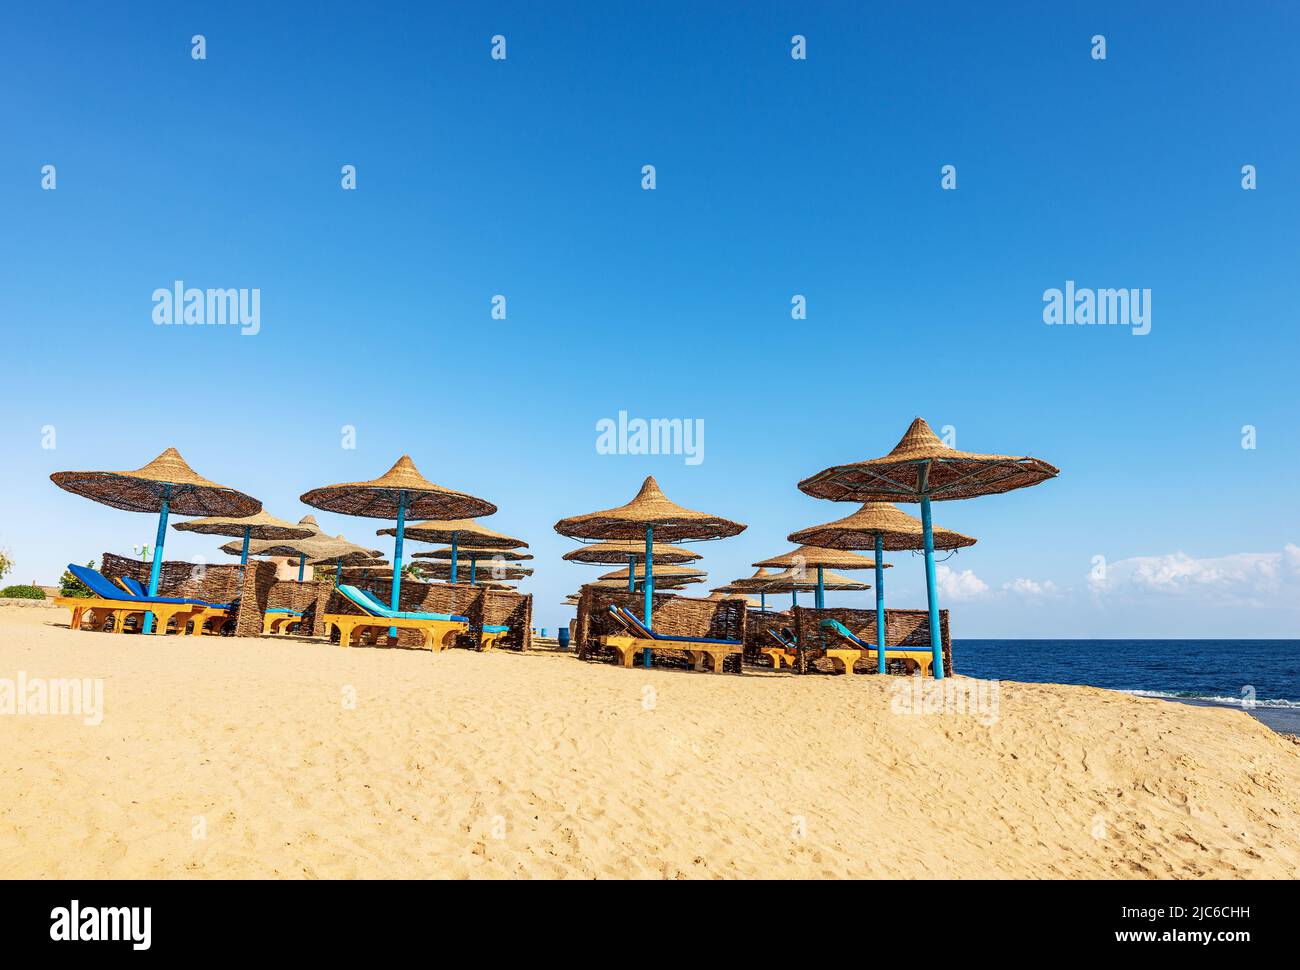 Sandstrand am Roten Meer mit Strohschirmen und Liegestühlen in der Nähe von Marsa Alam, Ägypten, Afrika. Meereslandschaft und Wellen brechen auf dem Korallenriff. Stockfoto